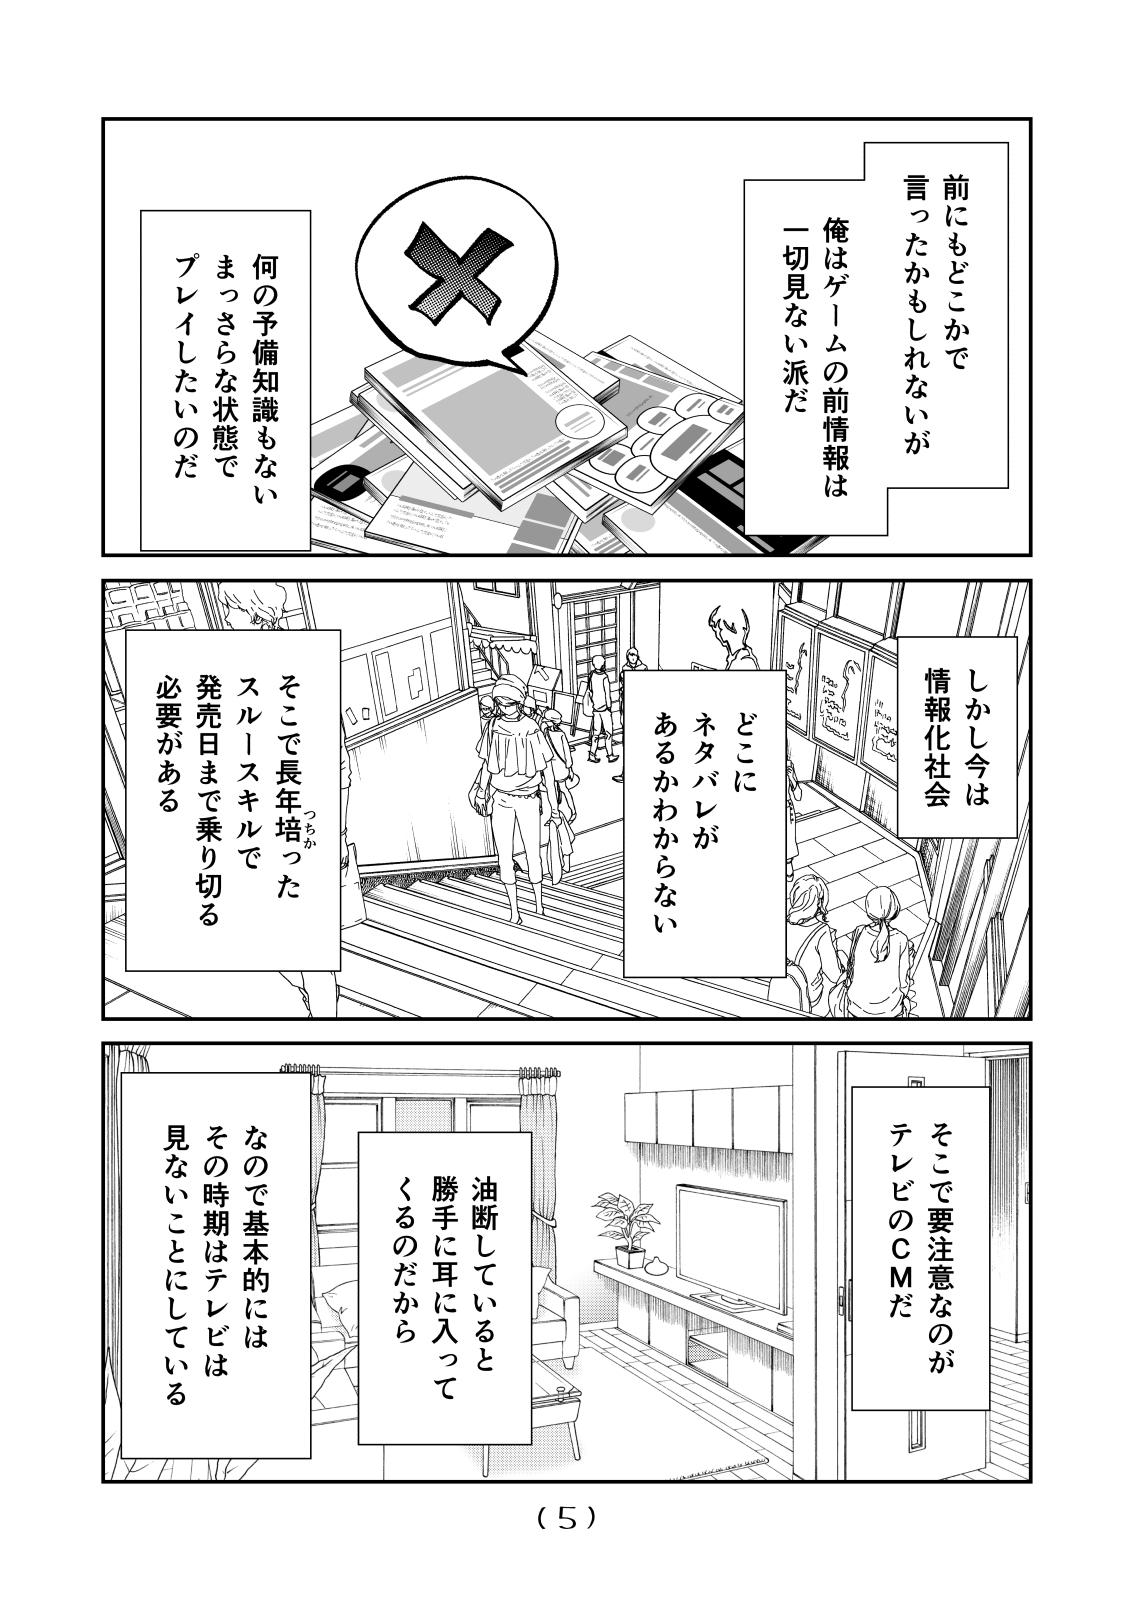 Gape Nyotaika Cheat ga Souzou Ijou ni Bannou Sugita Sono 16 - Original Yanks Featured - Page 7